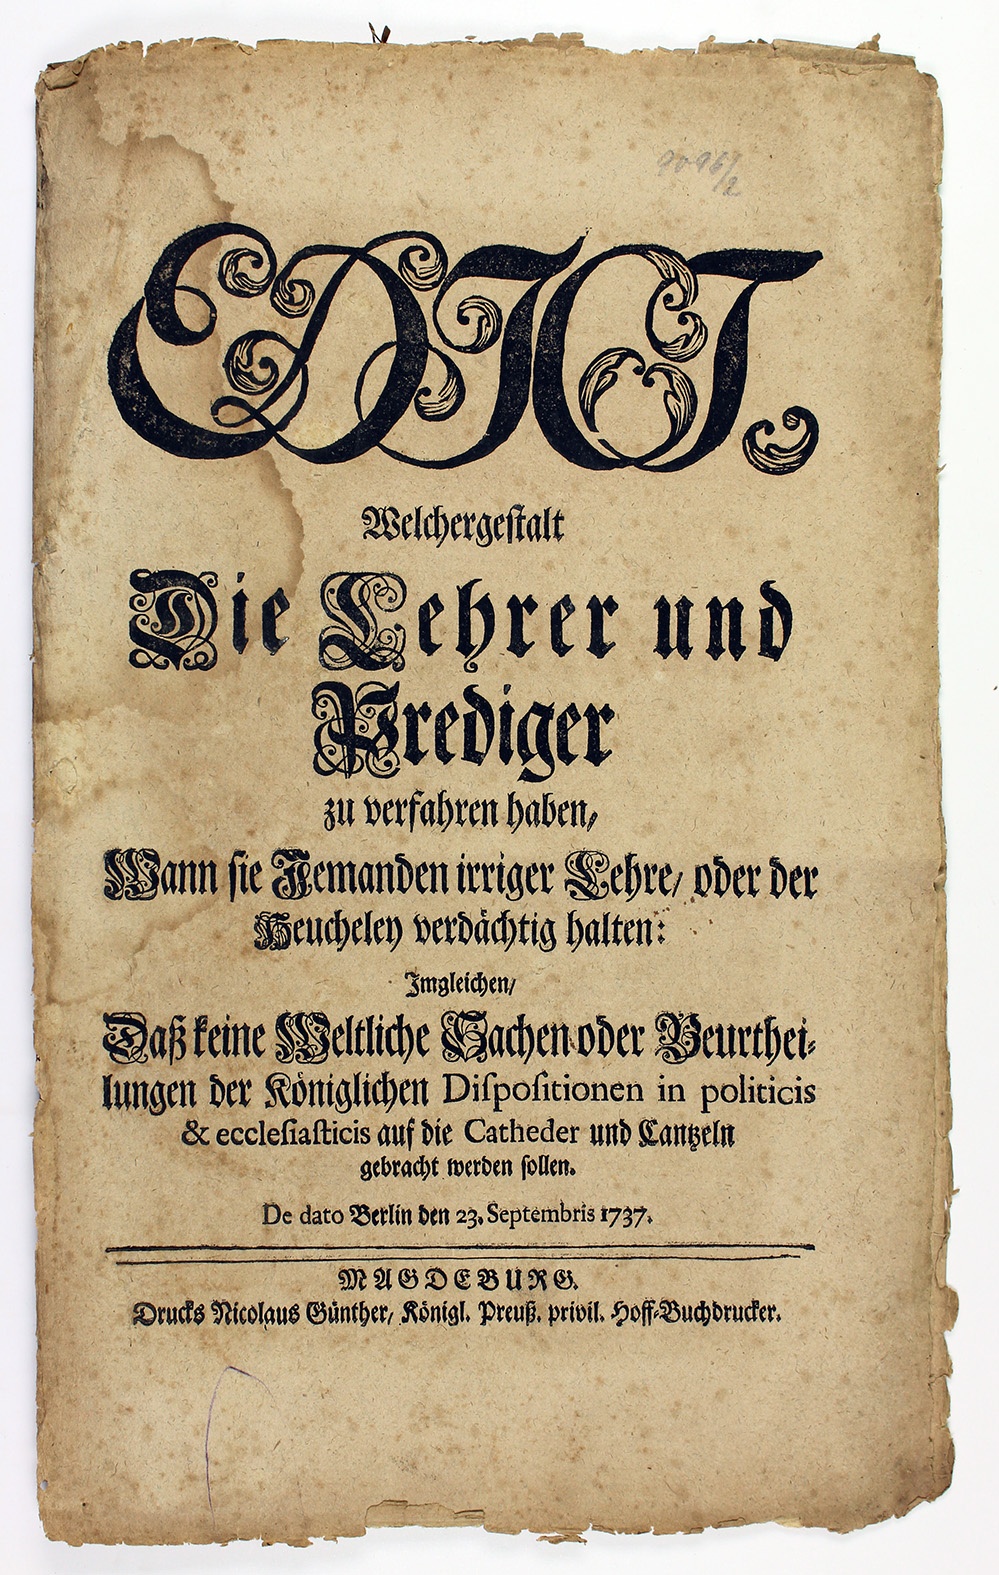 Edikt für Lehrer und Prediger zum Verdacht von Irrlehrer und Heuchelei, 1737 (Museum Wolmirstedt RR-F)